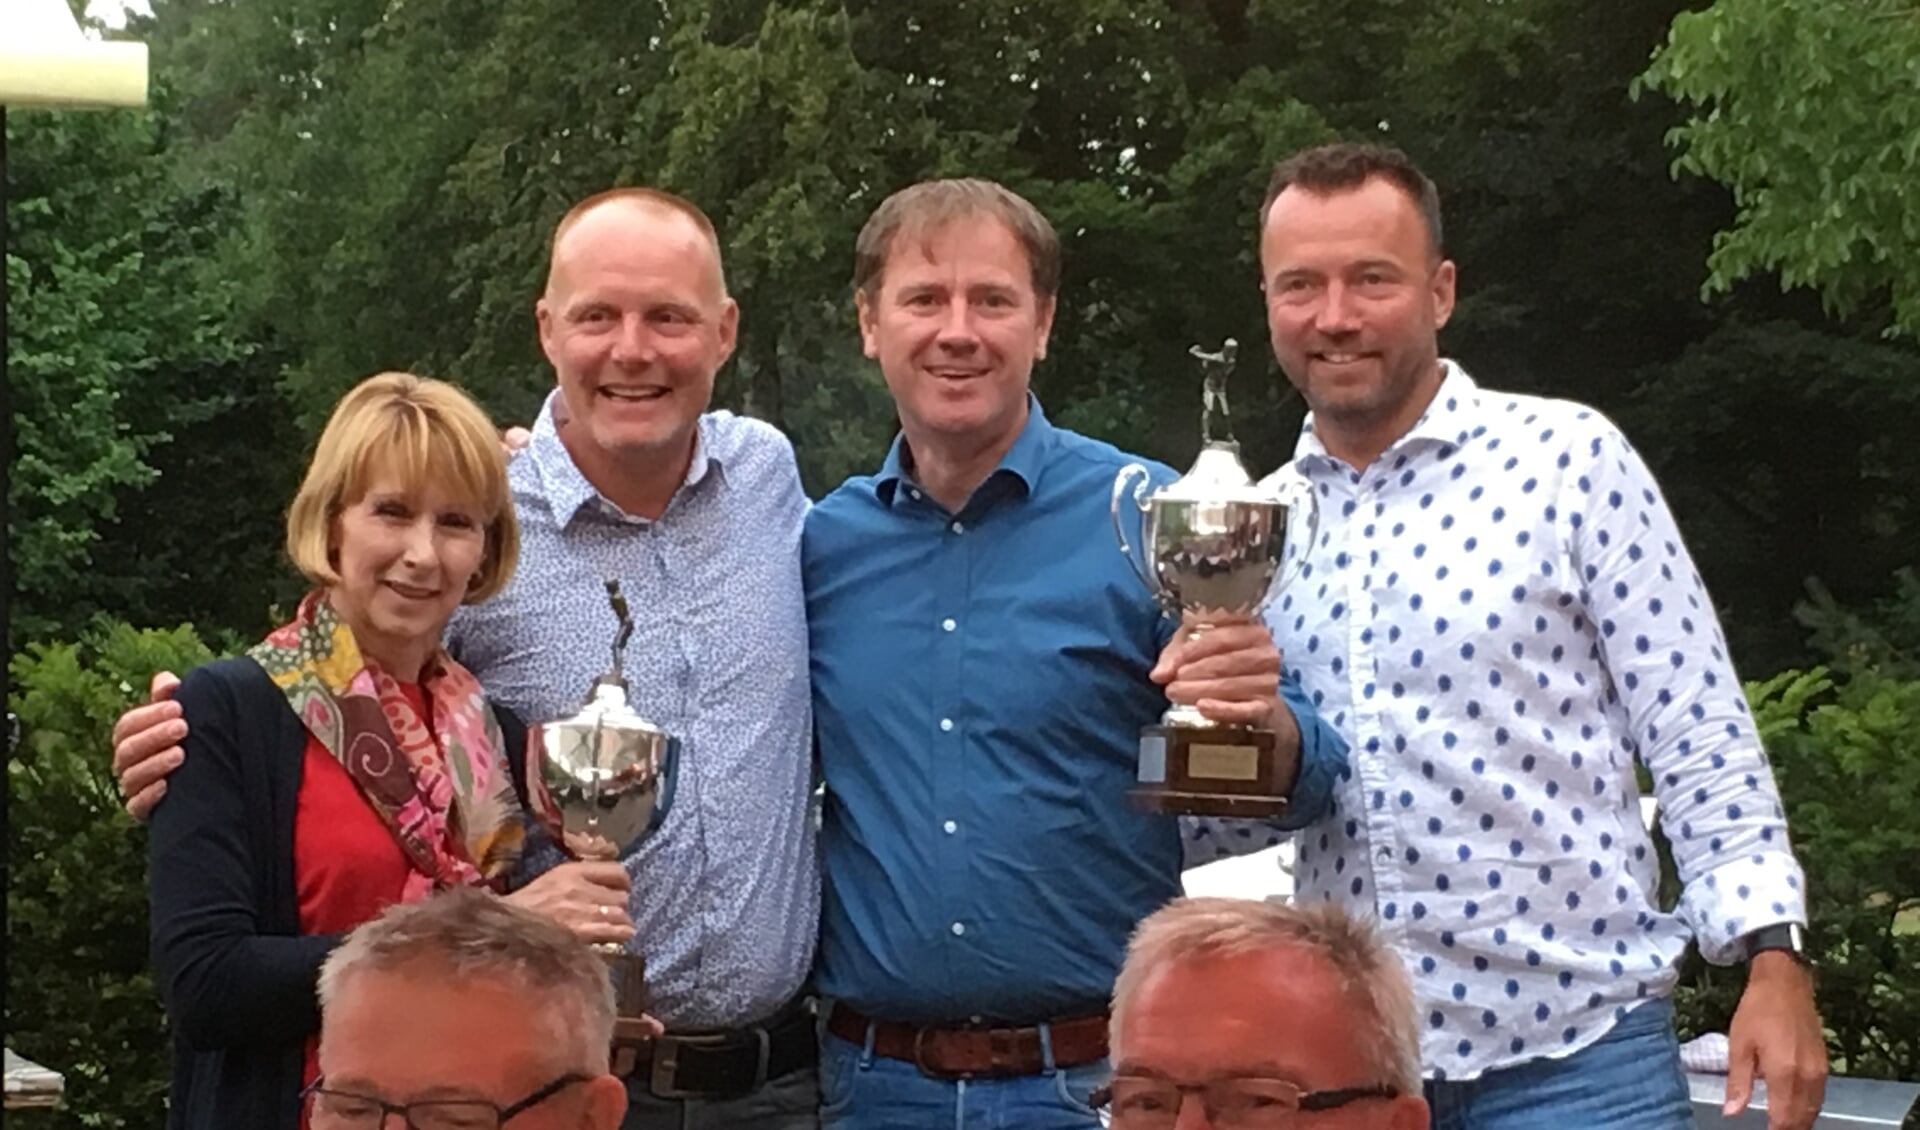 V.l.n.r.: Beppie Heersink (winnares 2018), Dennis Jansen (organisatie), René Jak (winnaar 2018) en Sander Jansen (organisatie). Foto: PR